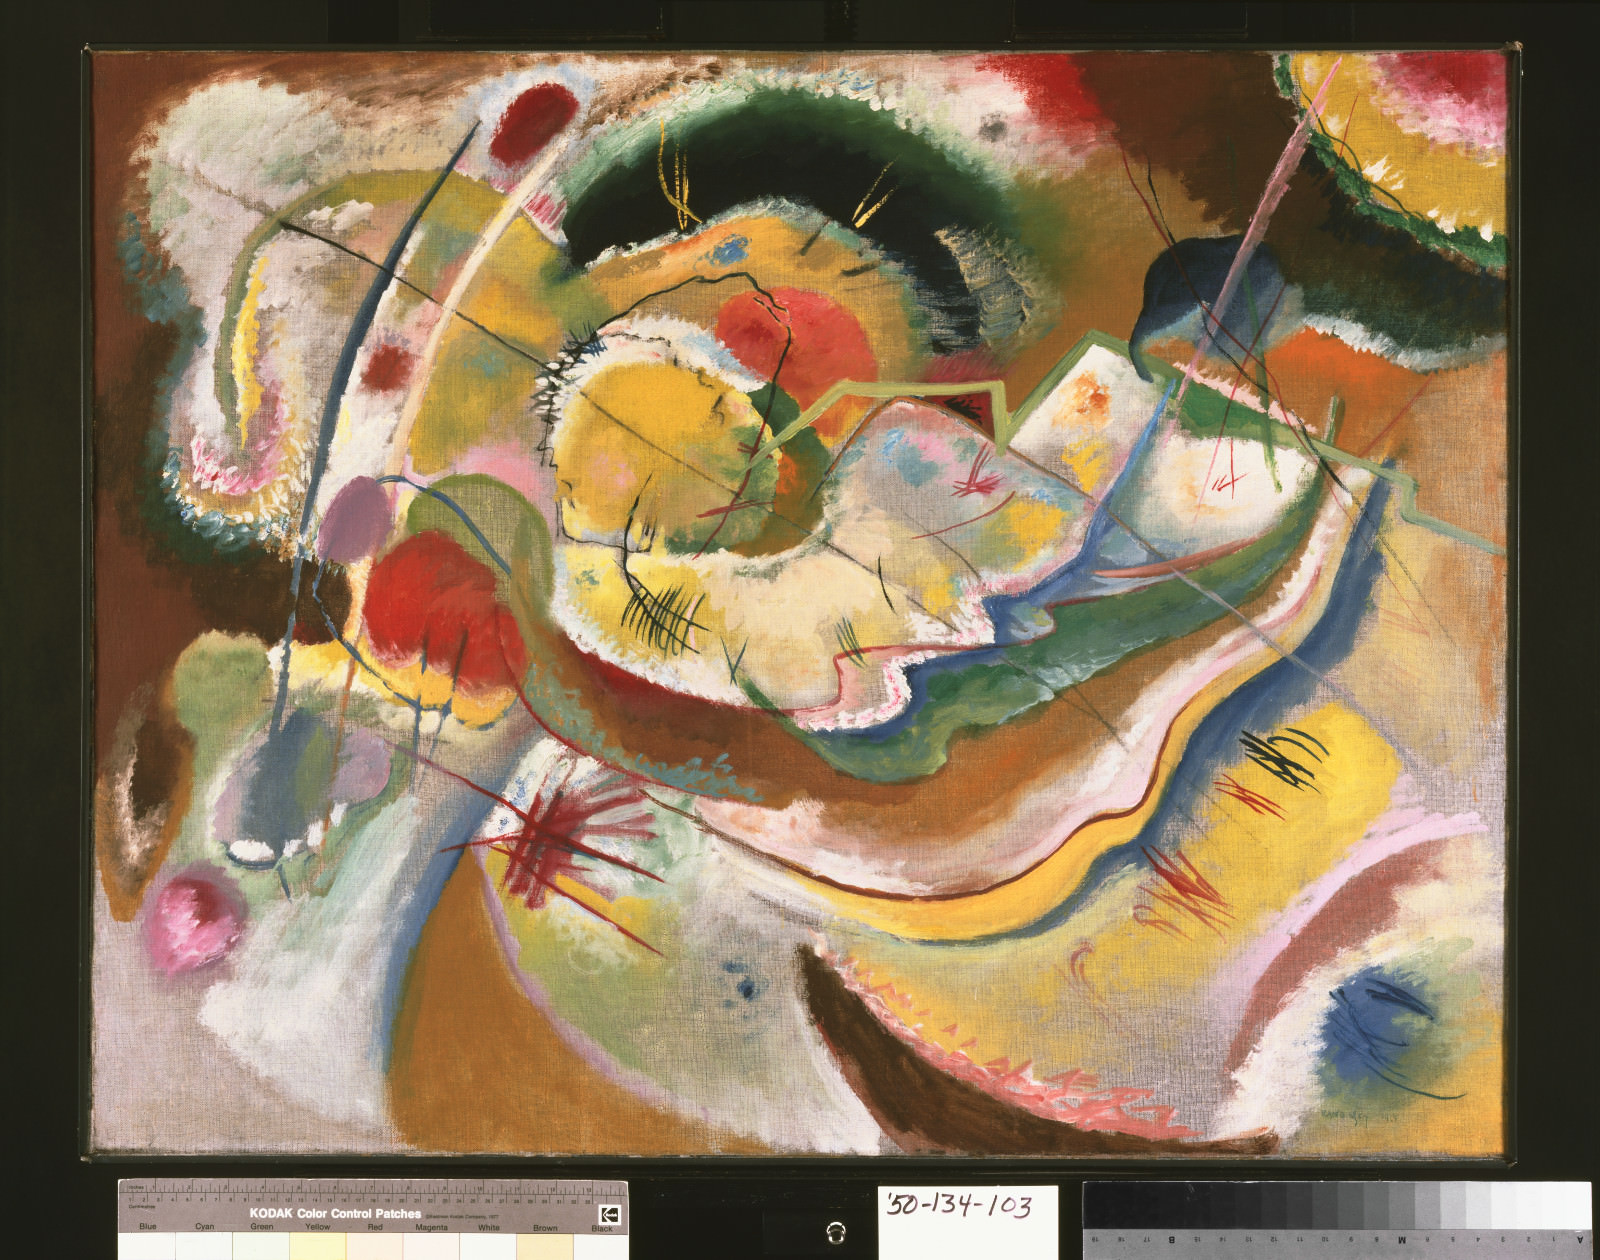 Figue. 4 - Vasily Kandinsky, Petite peinture avec jaune (improvisation), 1914, huile sur toile, 31 x 39 5/8 polegadas (78.7 x 100.6 cm) encadré: 32 3/4 x 41 1/2 x 2 1/2 popouces83.2 x 105.4 x 6.4xcmcm Philadelphia Museum of Art, Louise et Walter Arensberg Collection, 1950-134-103.